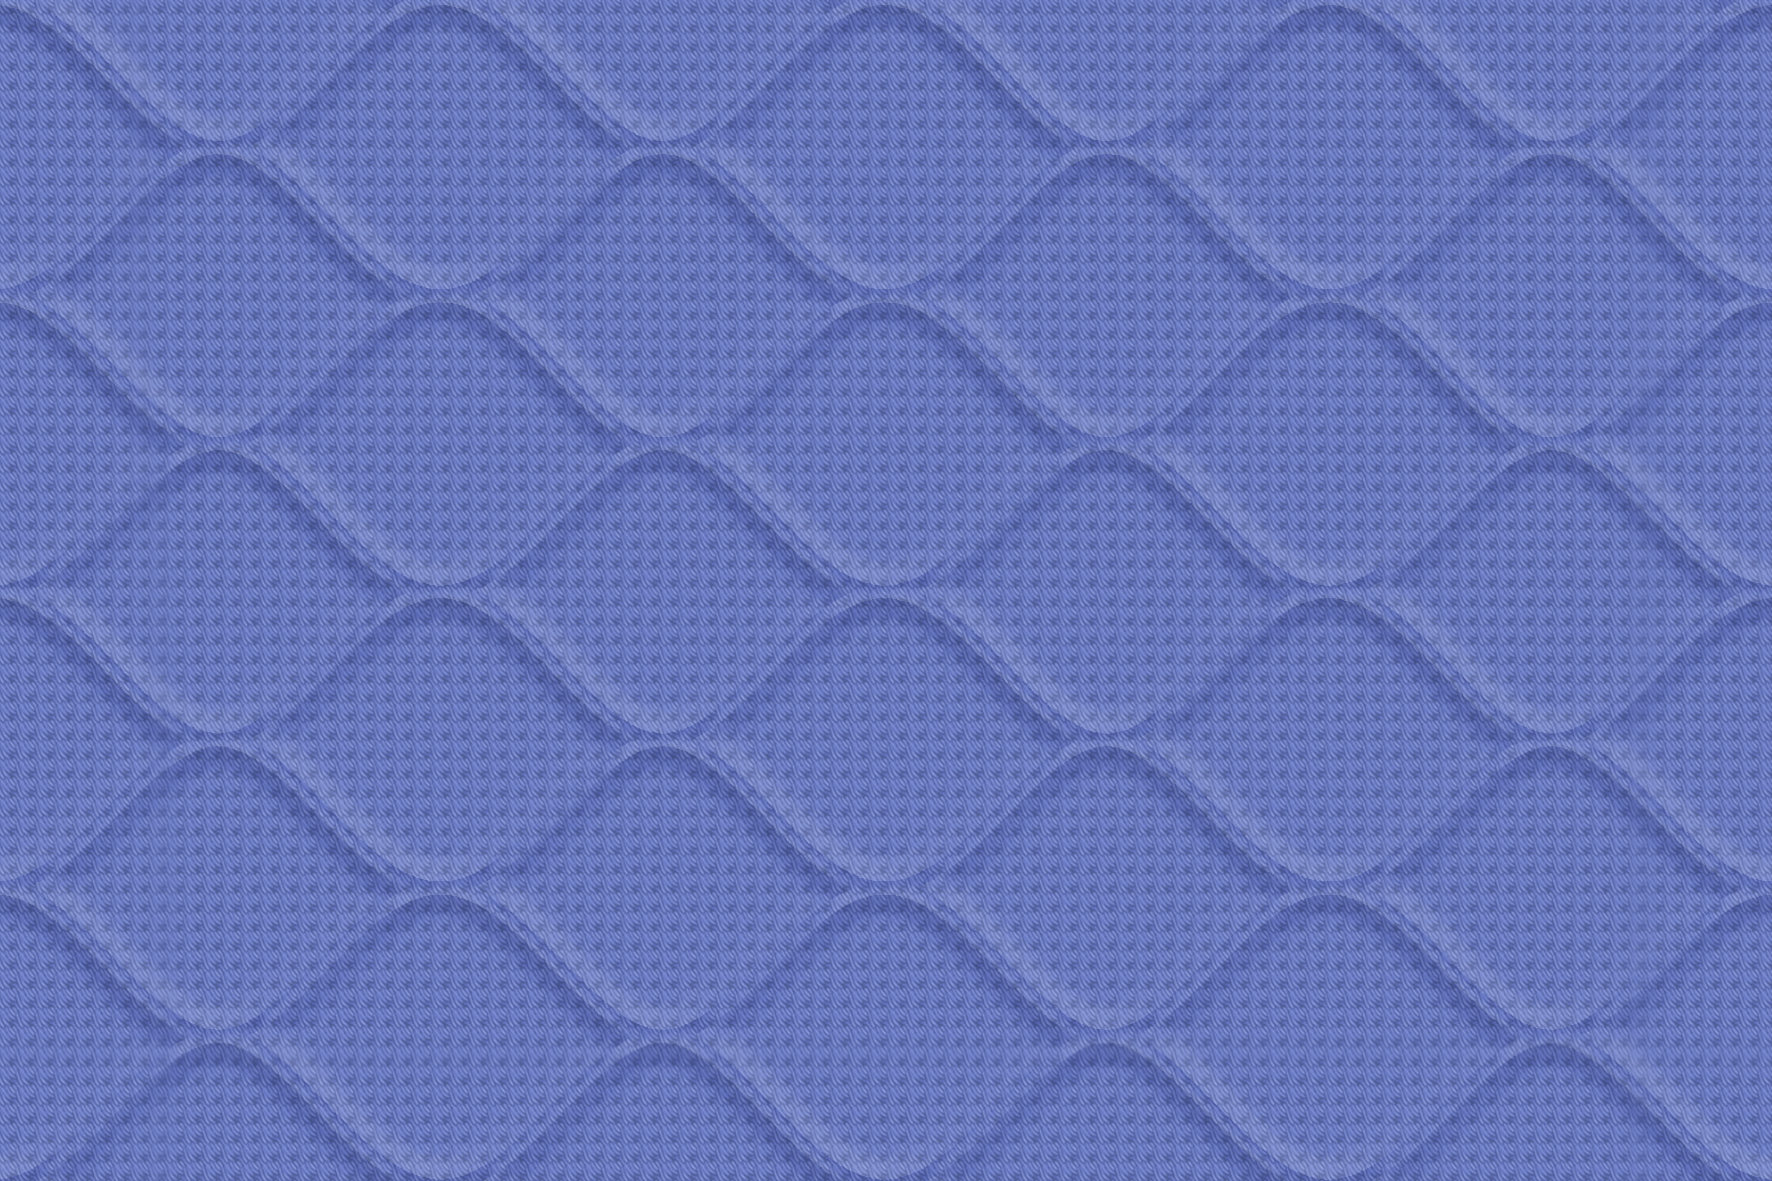 Blue Tiles for Bathroom Tiles, Kitchen Tiles